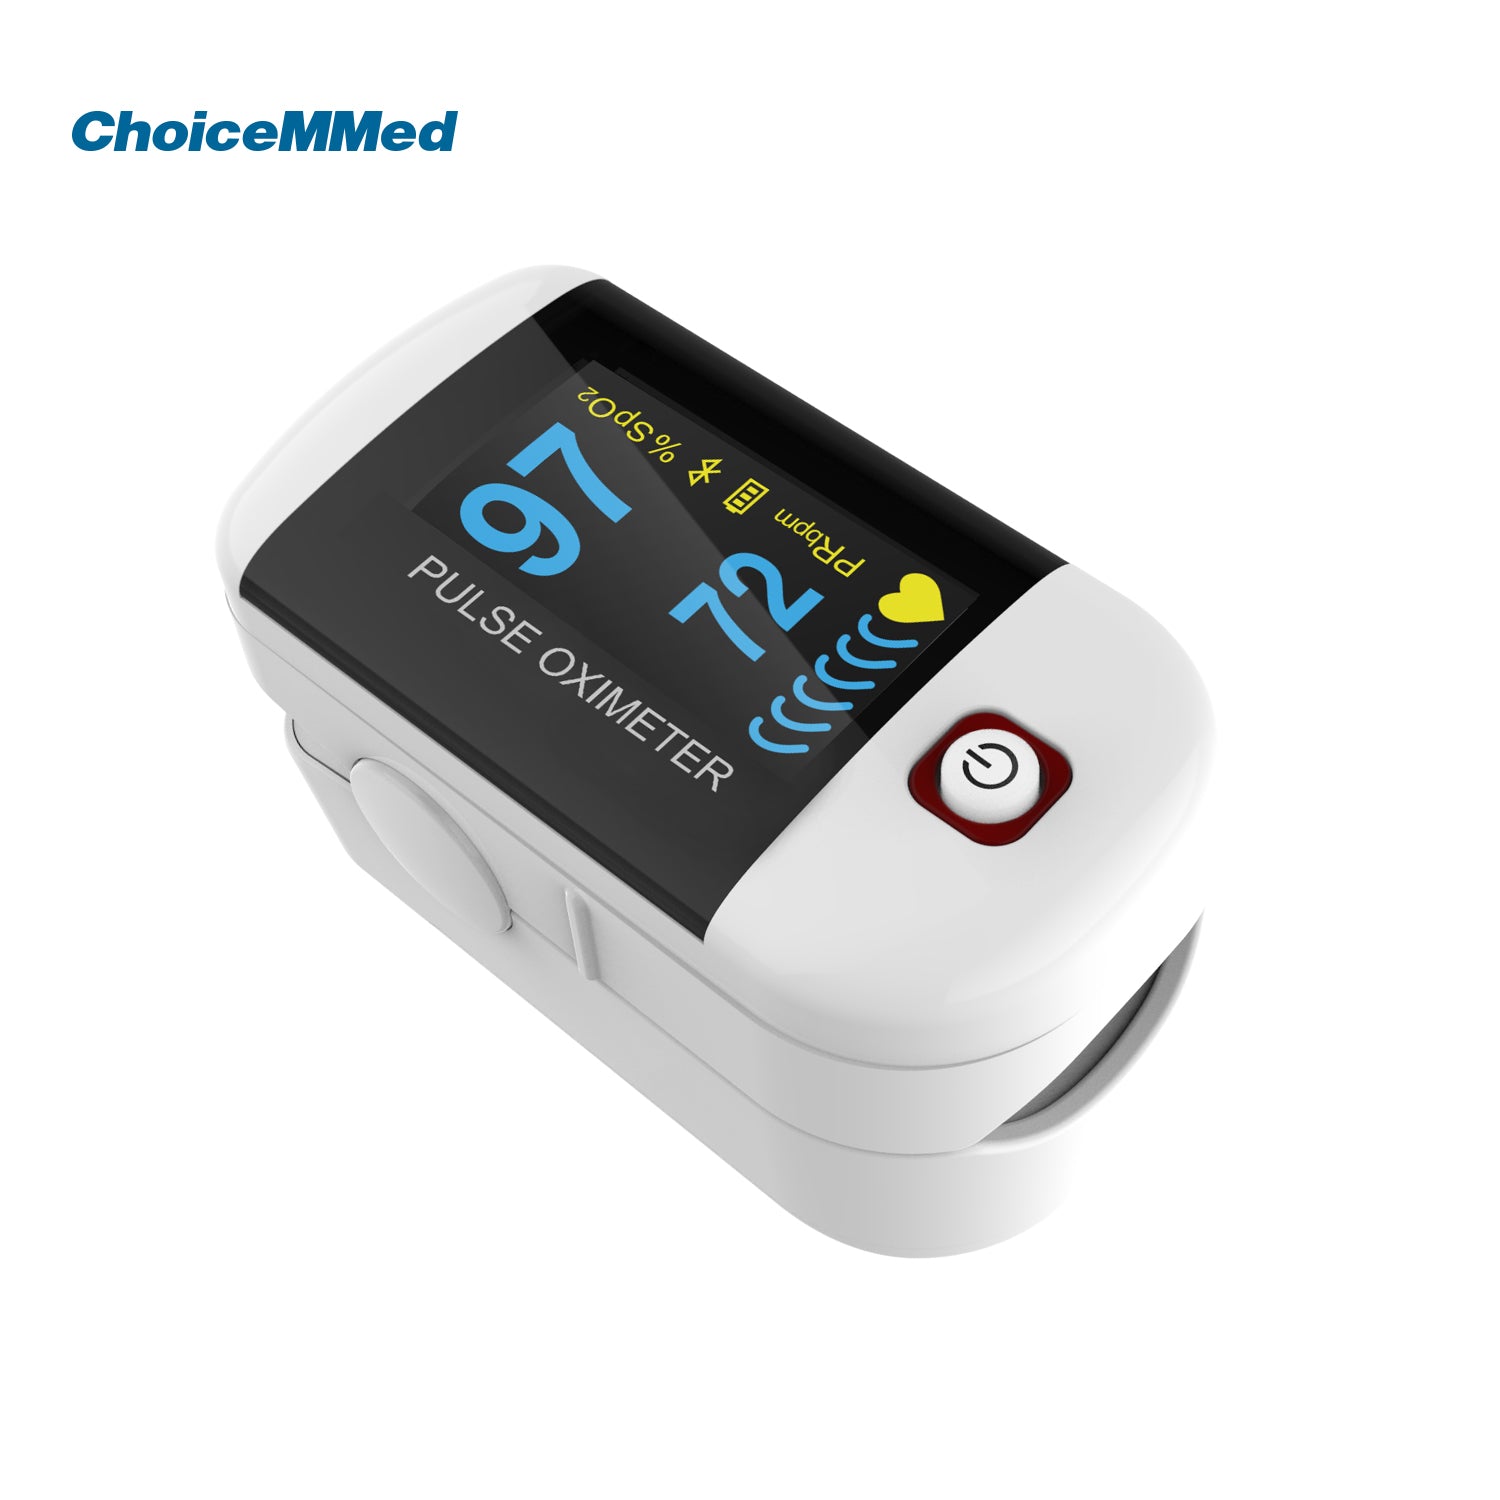 udvide amatør Svarende til CHOICEMMED MD300C228 Bluetooth Fingertrip Pulse Oximeter Oxywatch –  ChoiceMMed